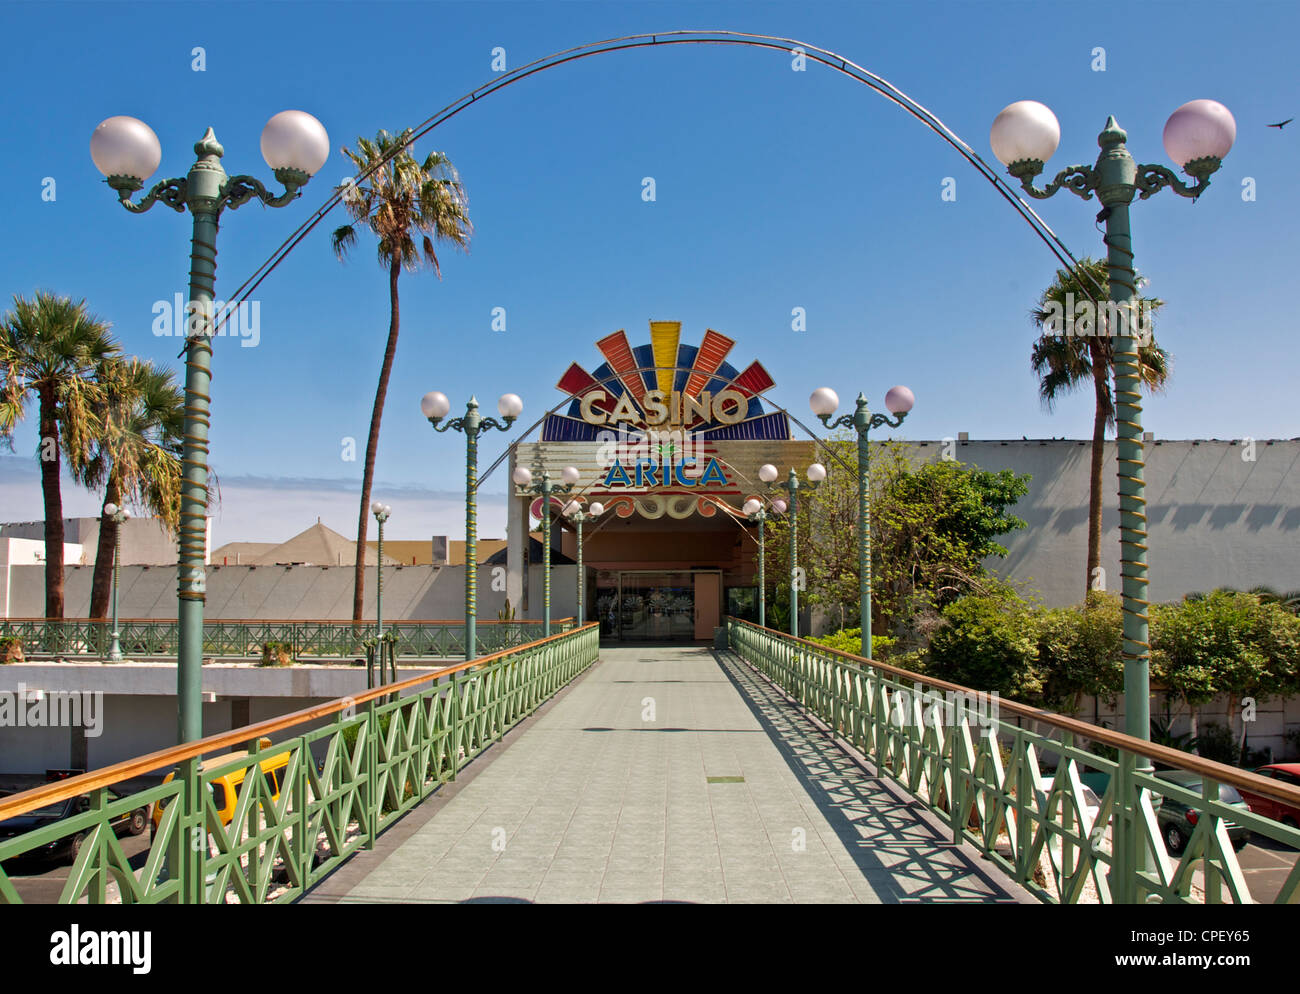 Casino-Arica-Chile Stockfoto